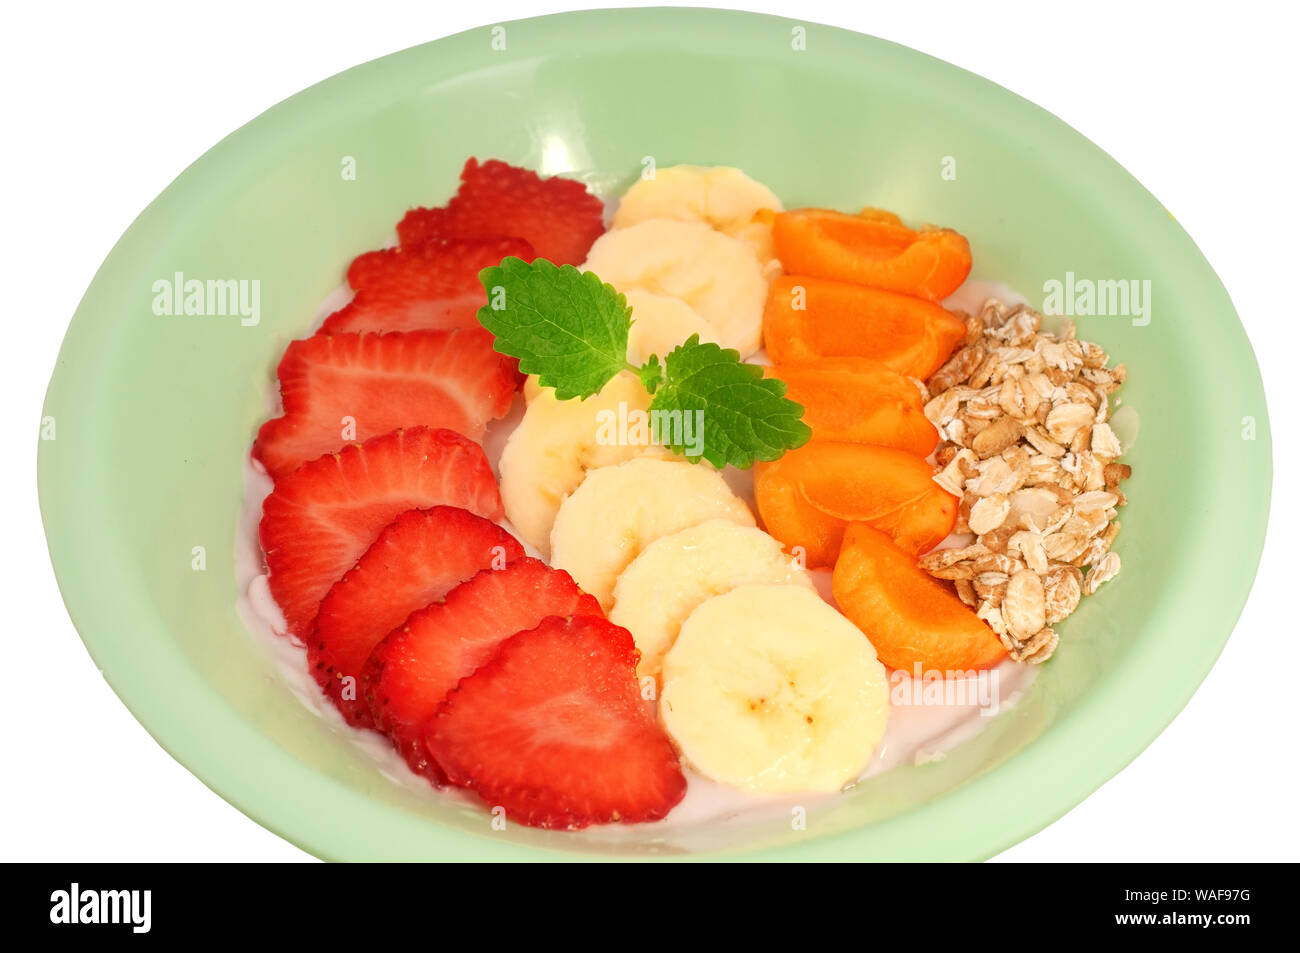 Asai-Schüssel in einen Teller mit Obst und Joghurt auf weißem Hintergrund  Stockfotografie - Alamy